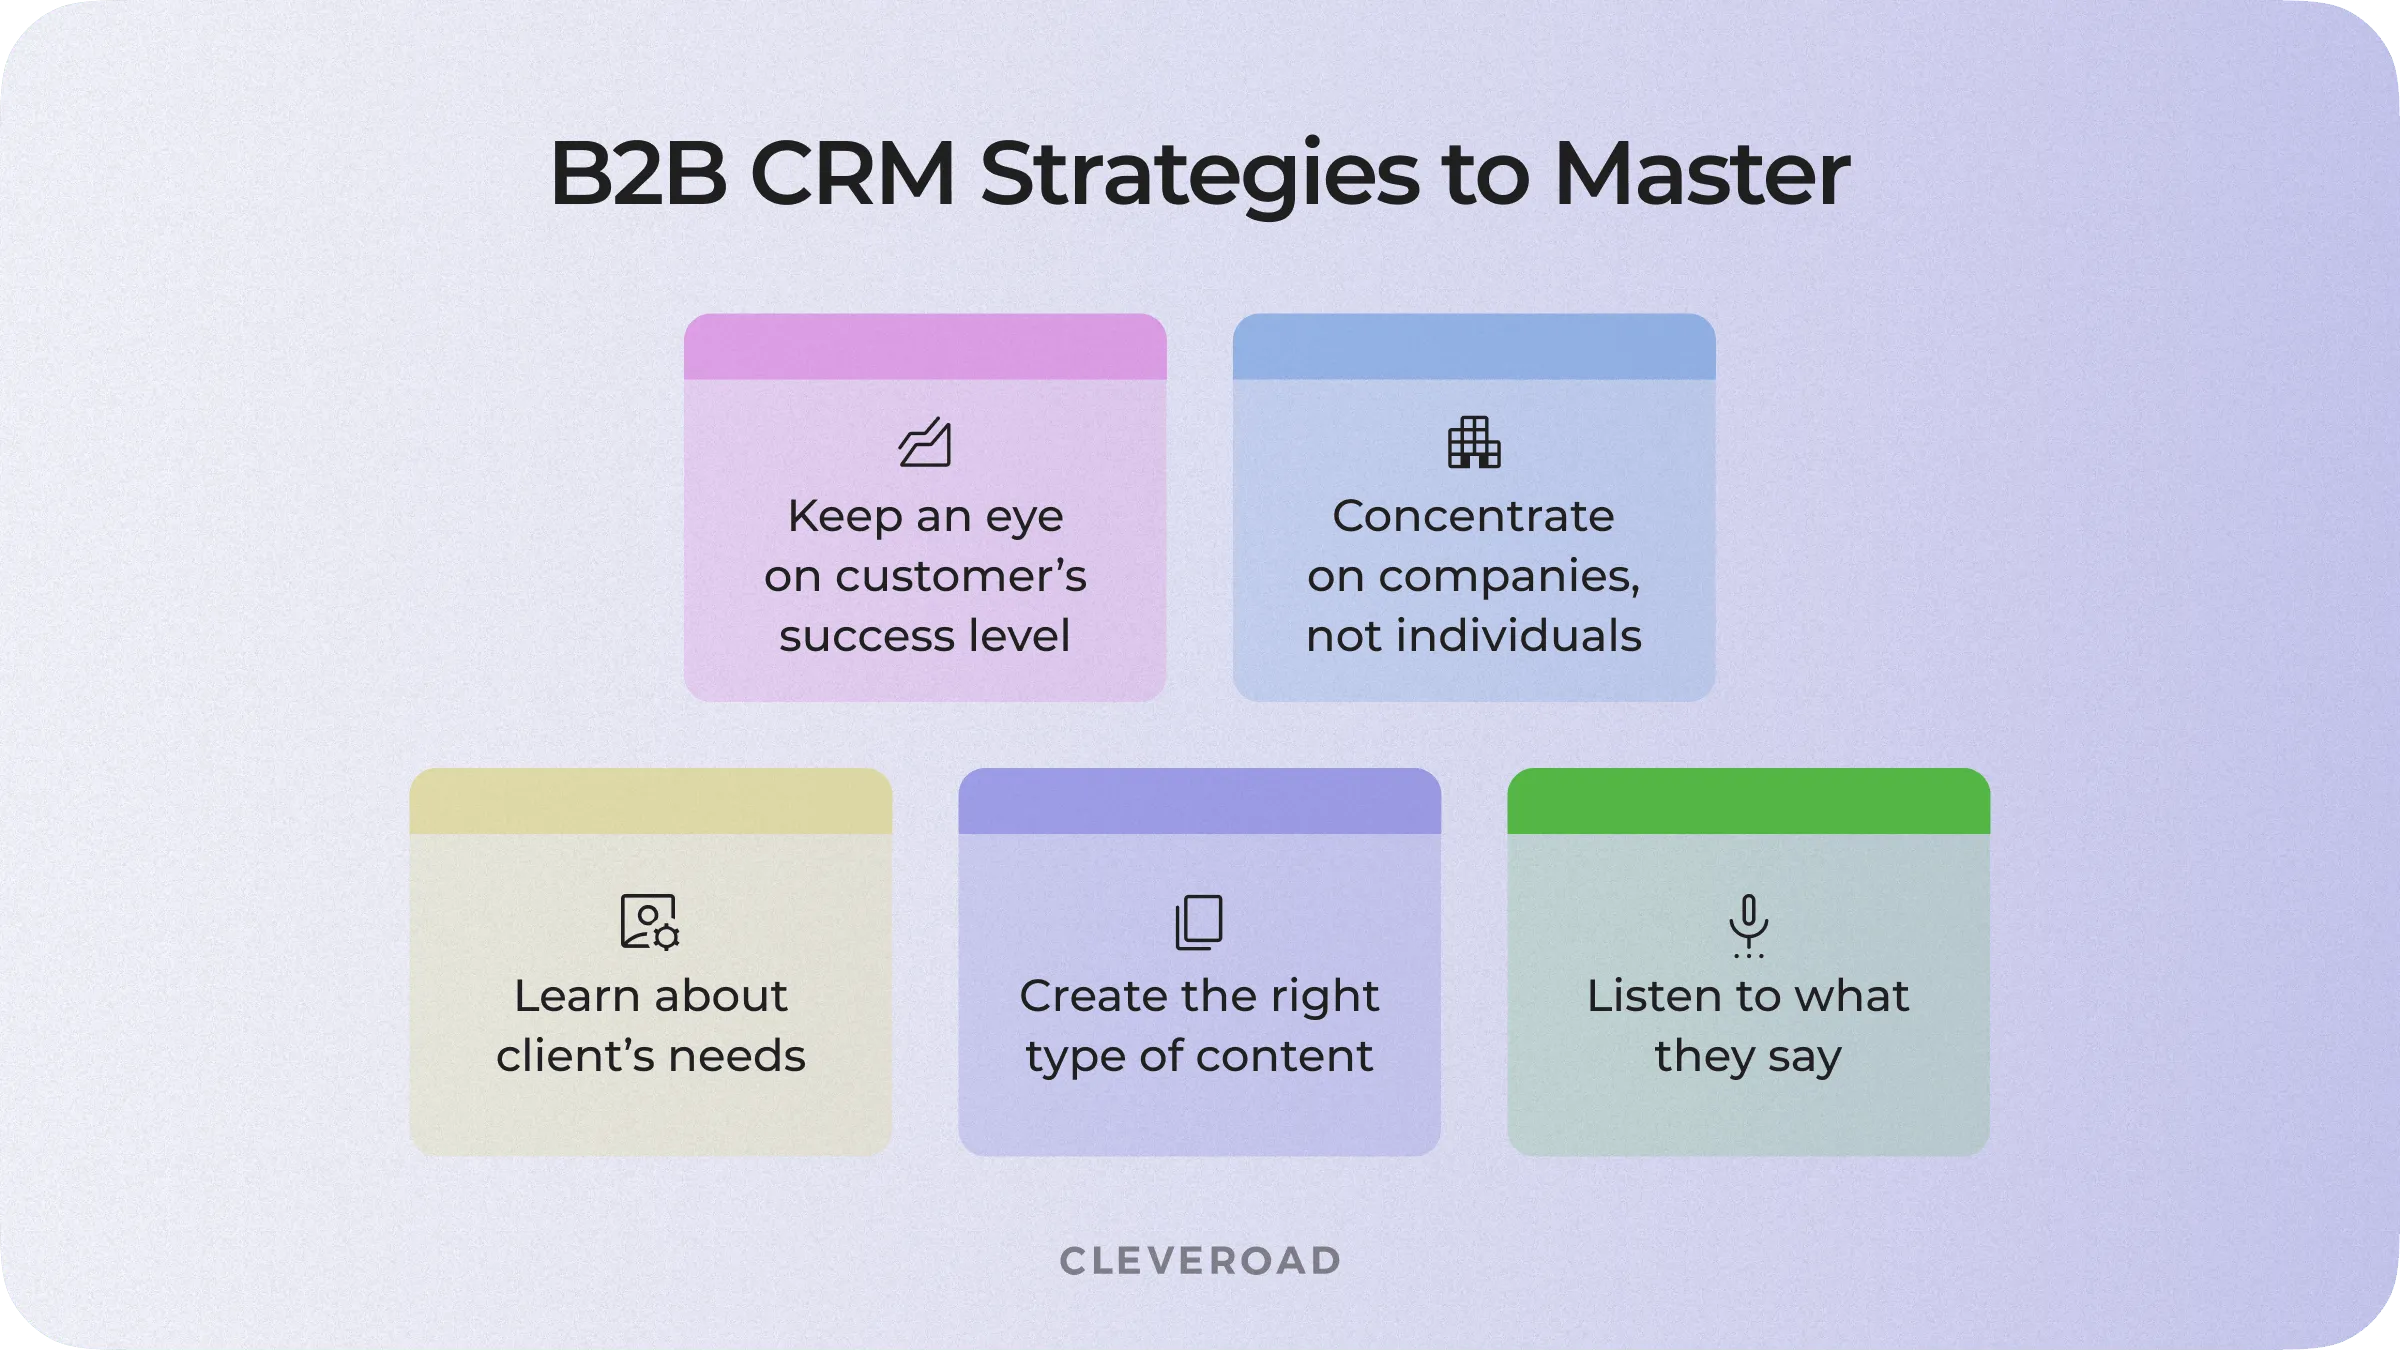 B2B CRM strategies to follow